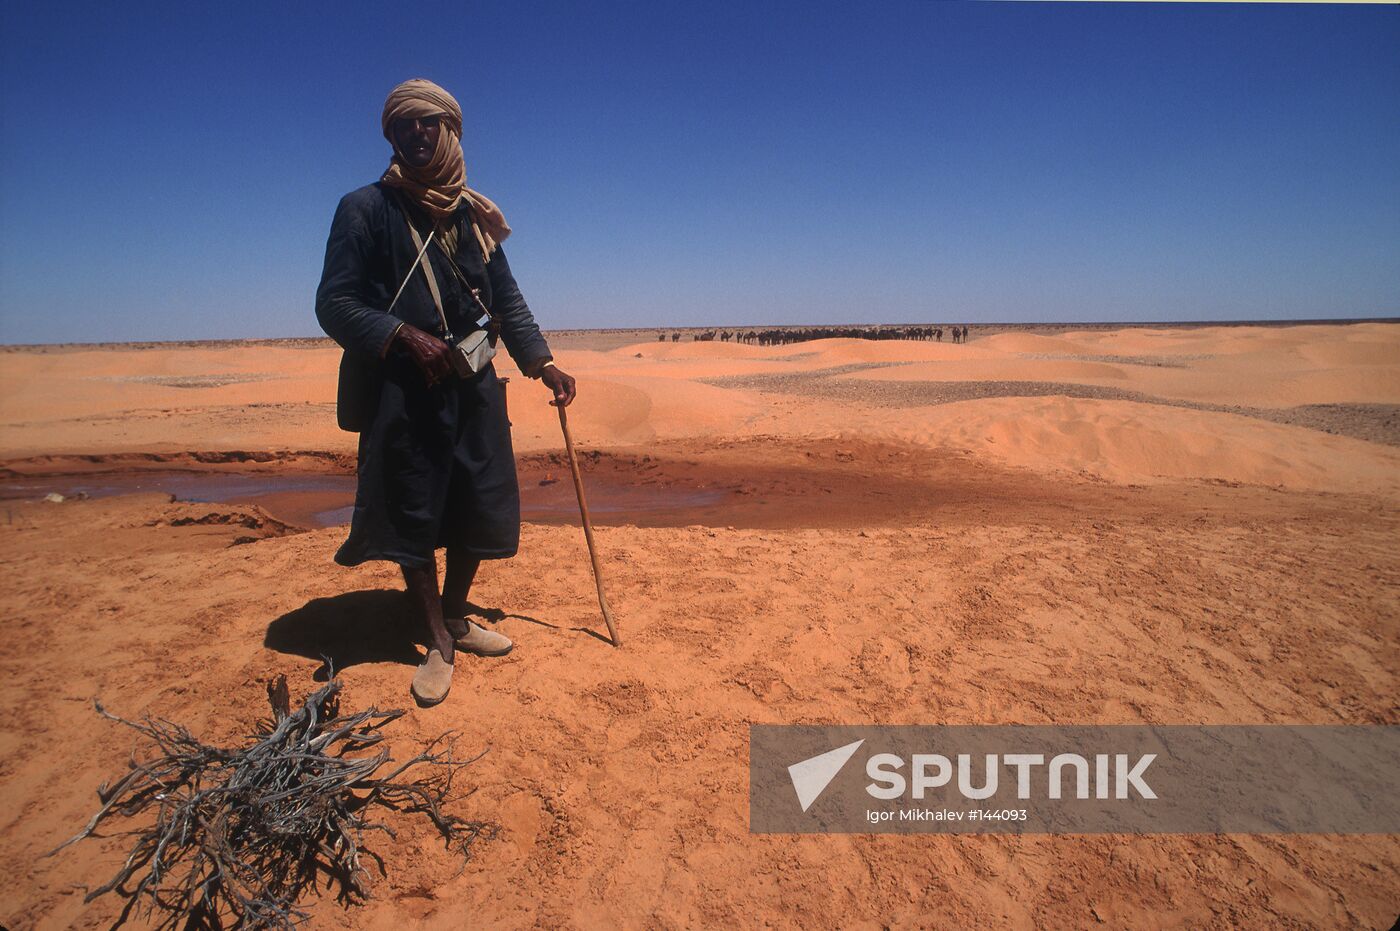 DESERT SAKHARA